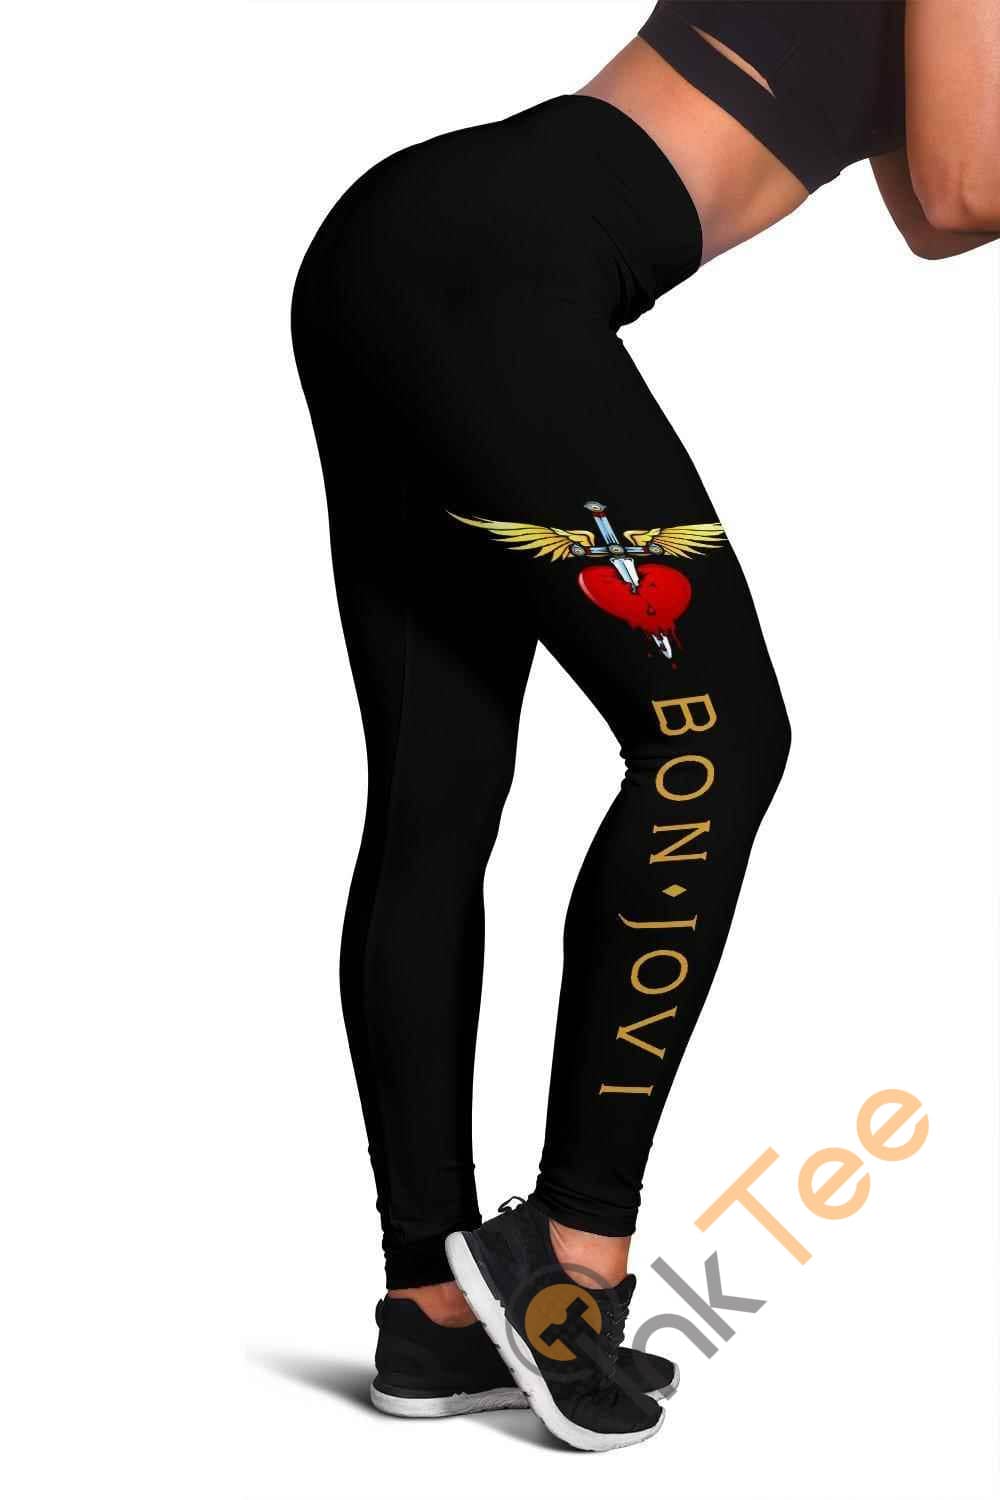 Inktee Store - Bon Jovi 3D All Over Print For Yoga Fitness Women'S Leggings Image